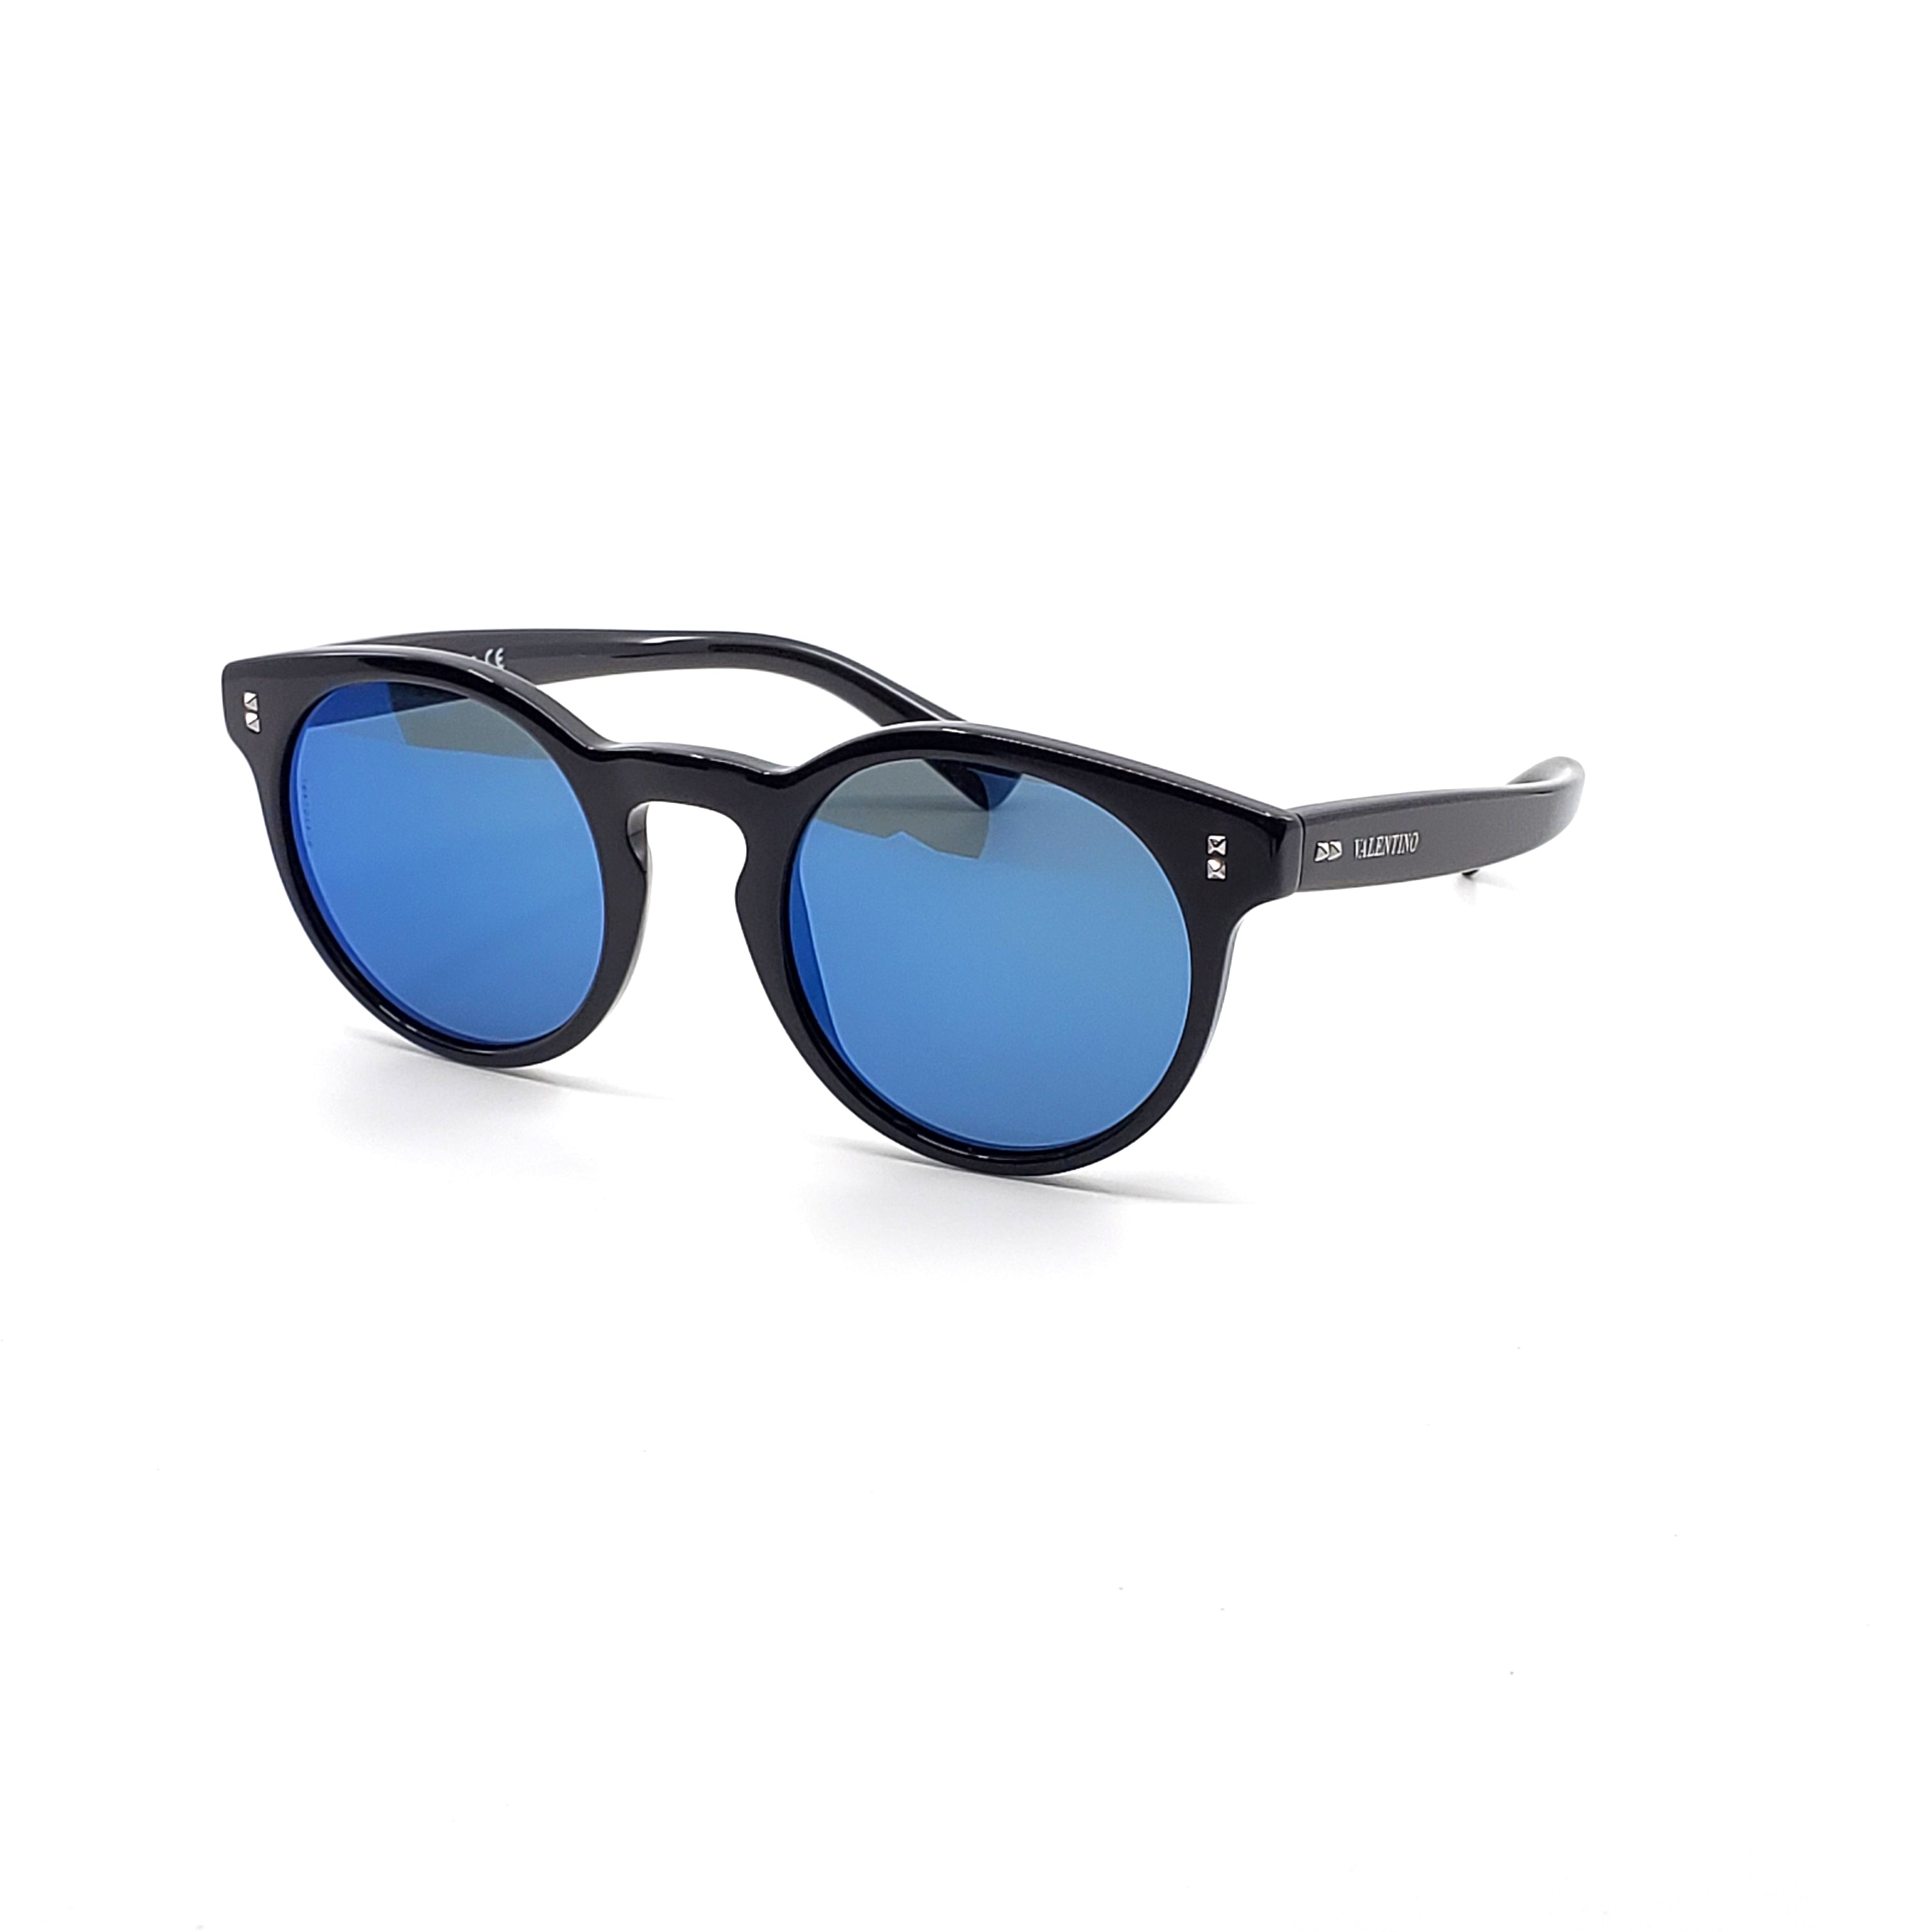 Valentino Sunglasses - OVA4009-500155